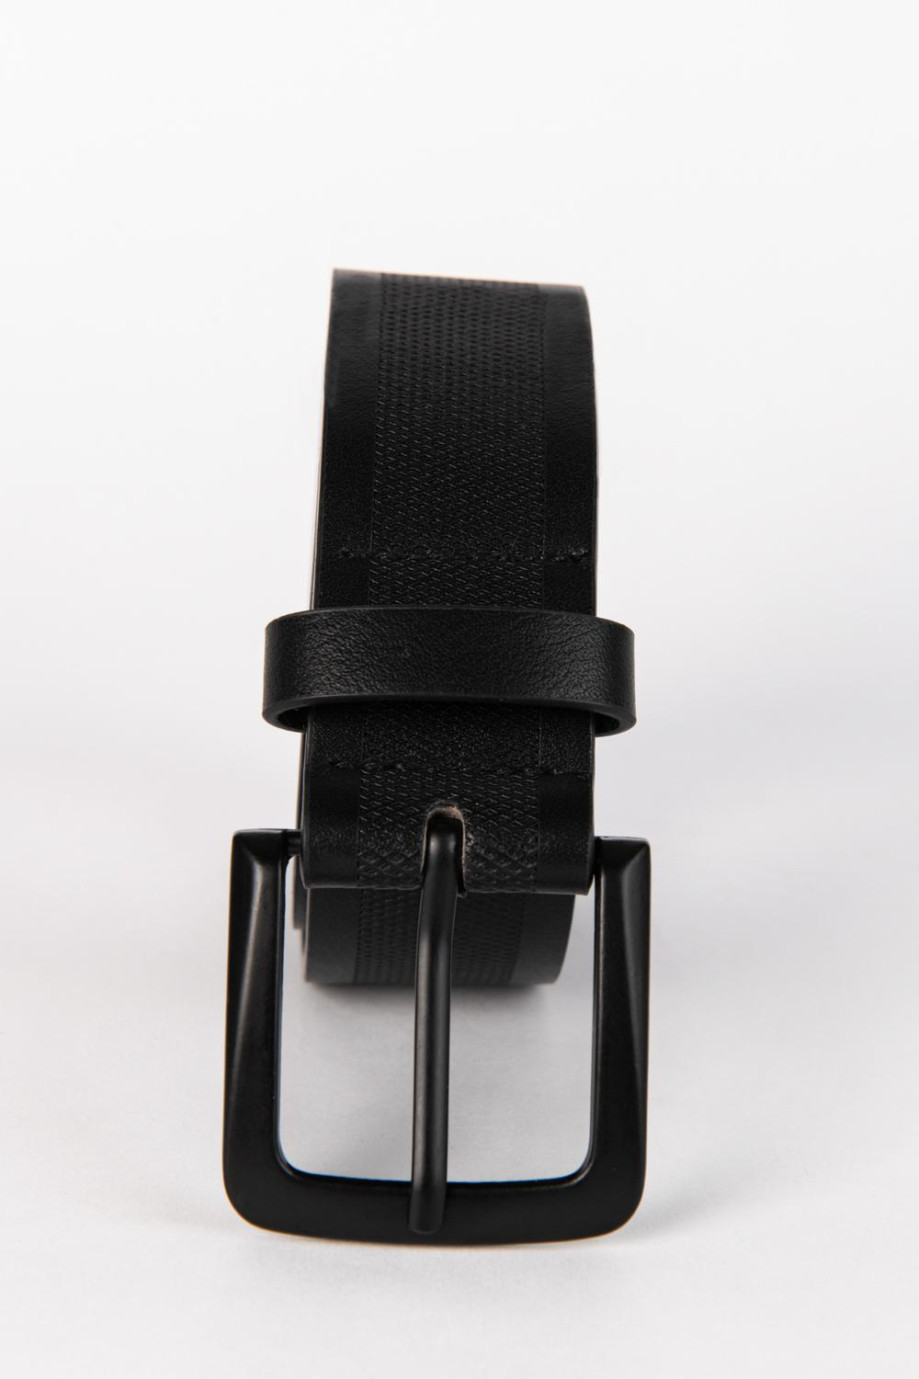 Cinturón negro con texturas y hebilla cuadrada mate